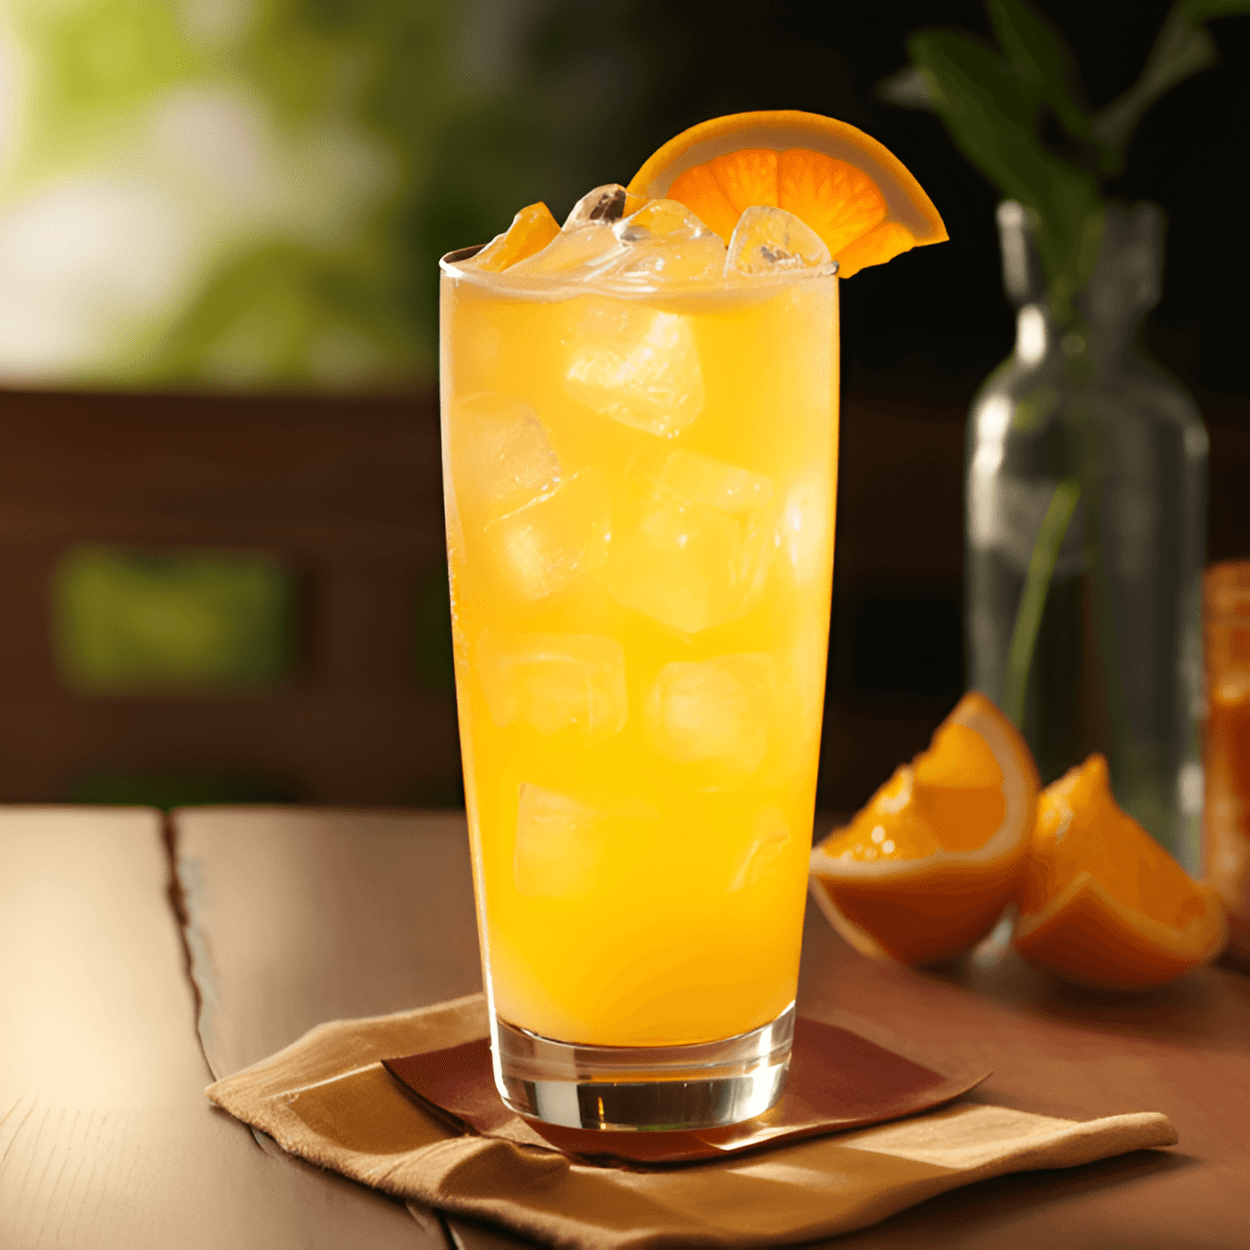 El Fuzzy Navel es un cóctel dulce, afrutado y refrescante. Tiene un sabor cítrico brillante del jugo de naranja, combinado con el sabor suave y dulce del licor de melocotón. La bebida es ligera y fácil de beber, lo que la hace perfecta para clima cálido o una noche relajante.